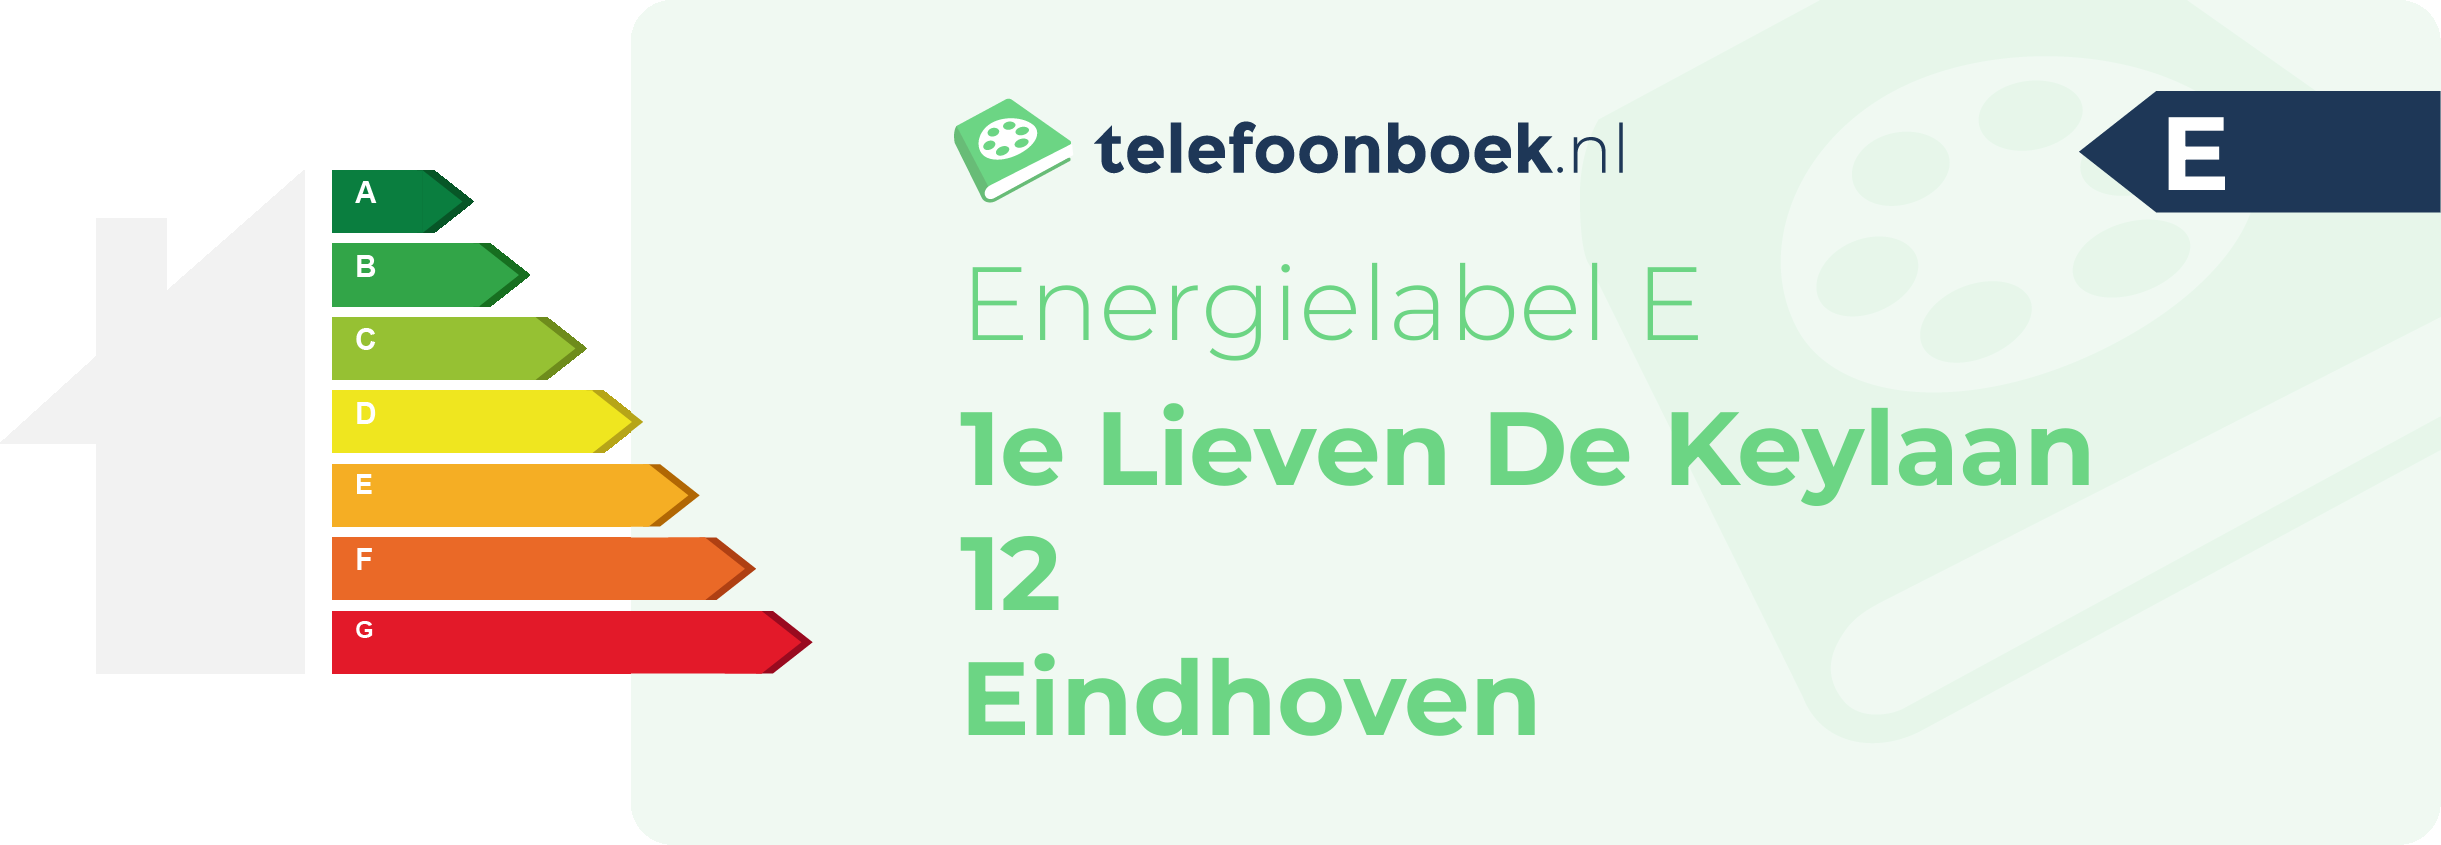 Energielabel 1e Lieven De Keylaan 12 Eindhoven